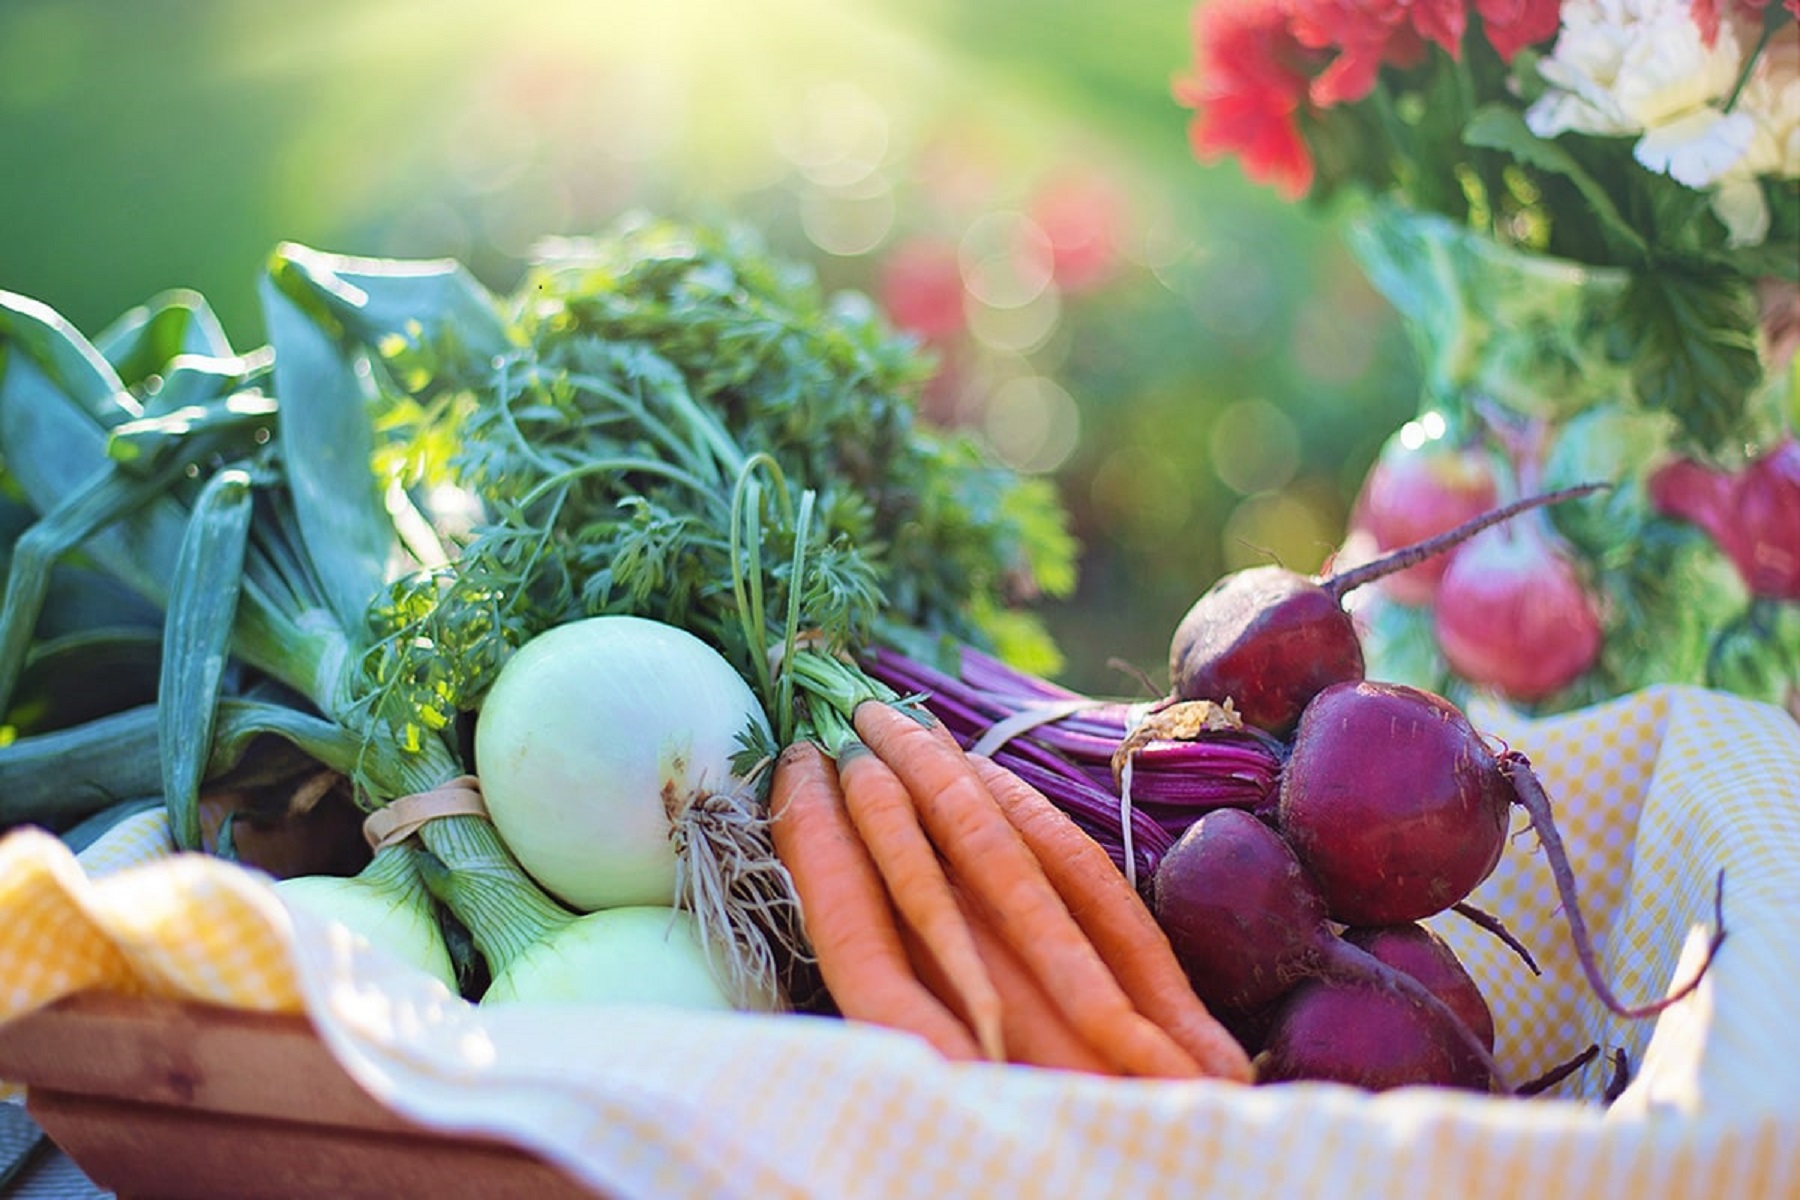 Διατροφή Χειμώνας: Τα πιο υγιεινά λαχανικά εποχής